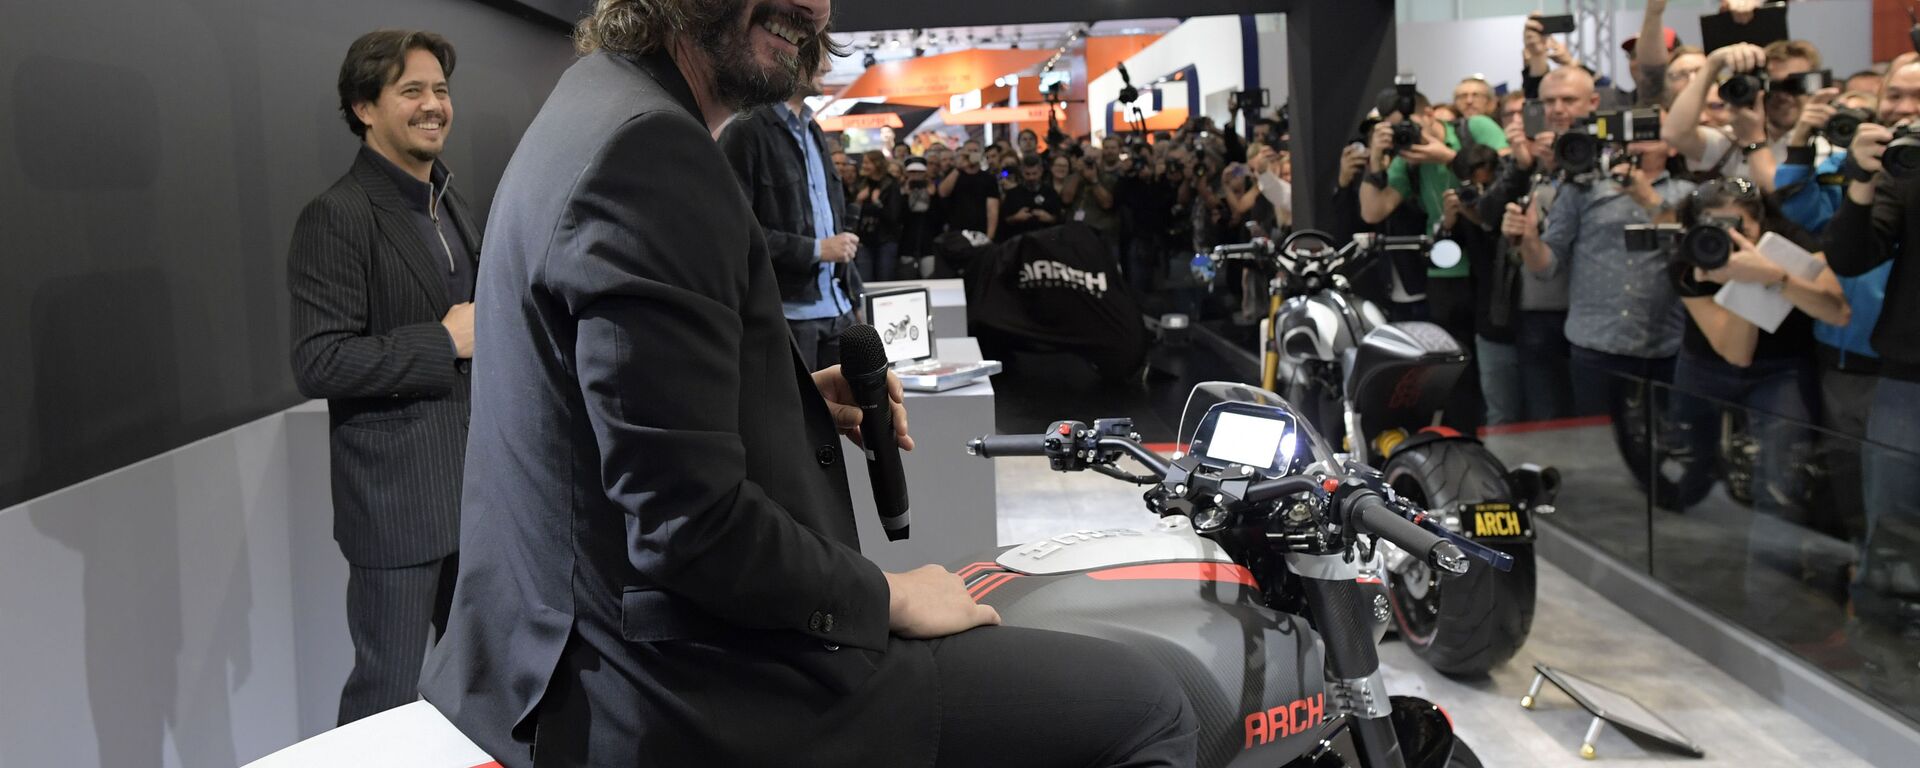 Ünlü Hollywood oyuncusu Keanu Reeves ve yapımcı Gard Hollinger, Harley-Davidson modeli temelinde motosikletler üreten kendi şirketleri Arch Motorcycle’i tanıtmak için fuara geldi. - Sputnik Türkiye, 1920, 03.11.2021